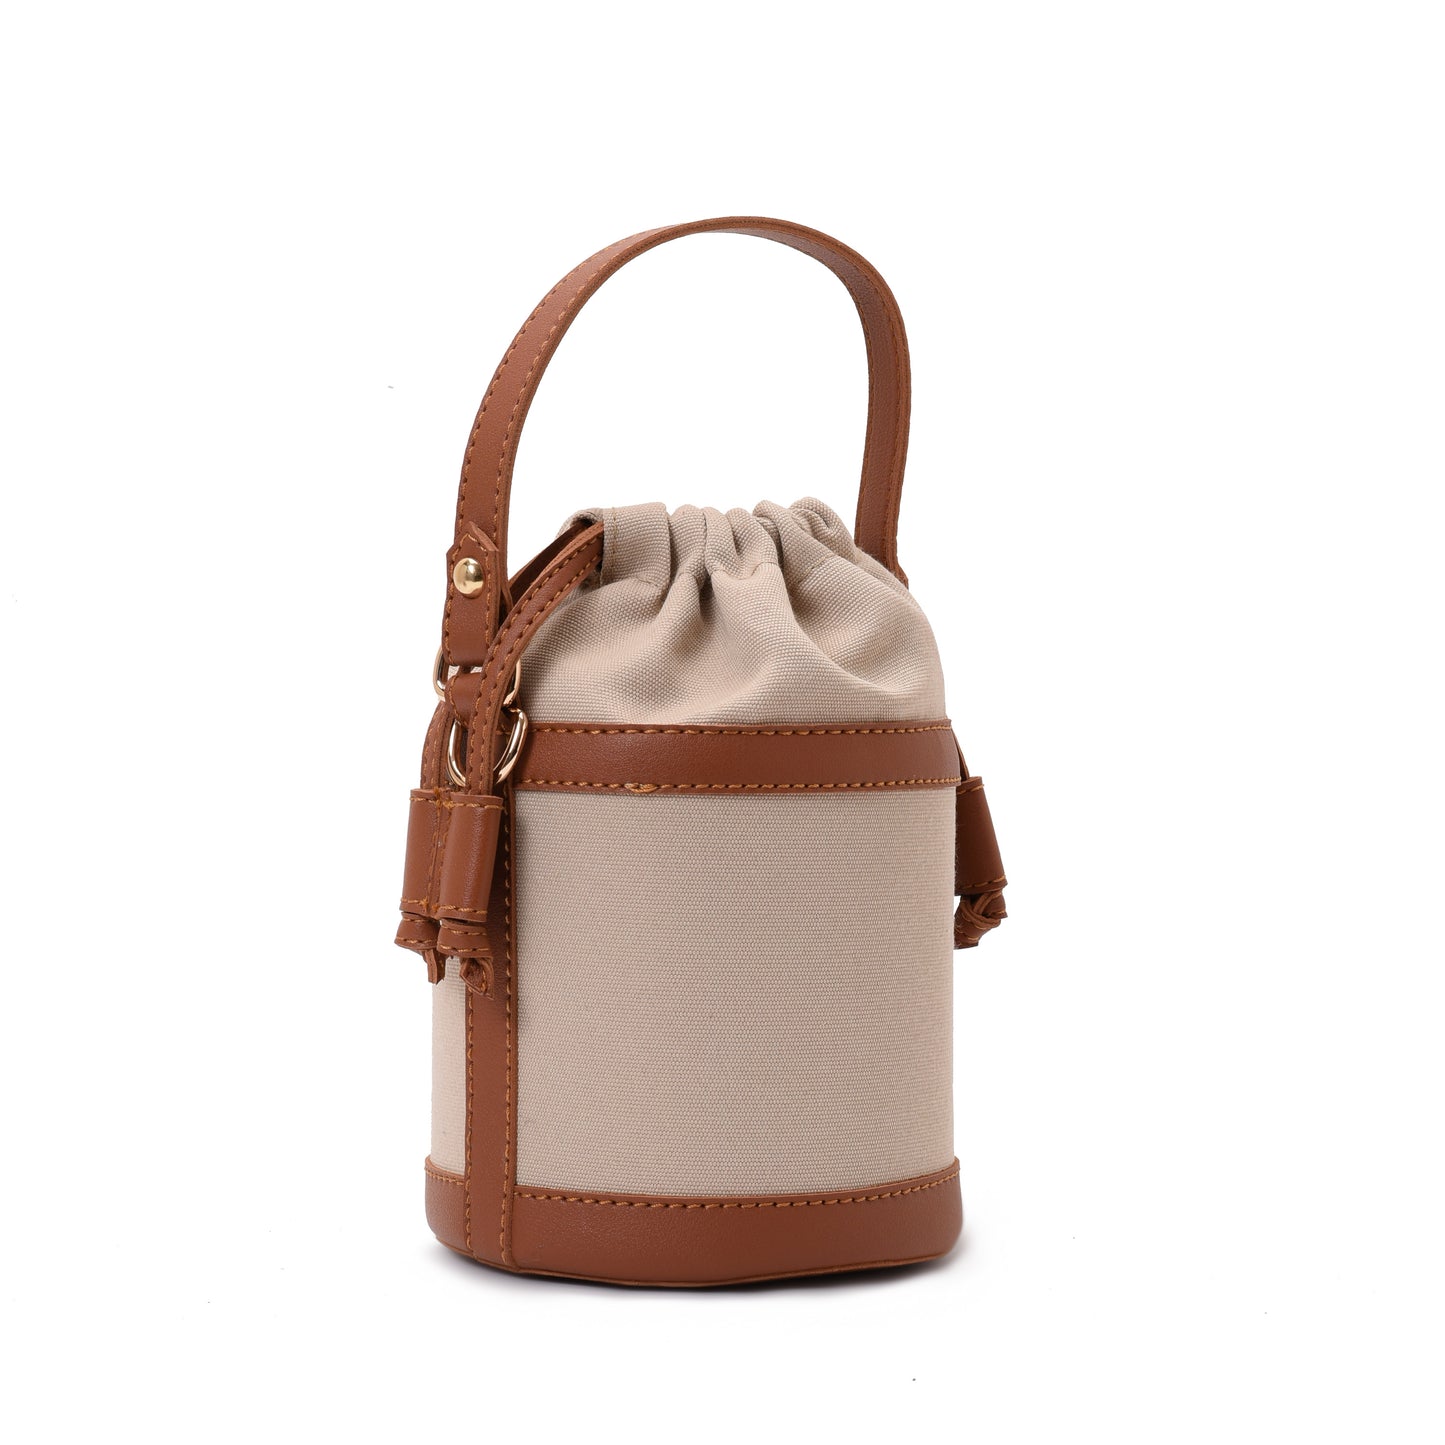 Retro bucket Beige Handbag with Brown belt -Code 910